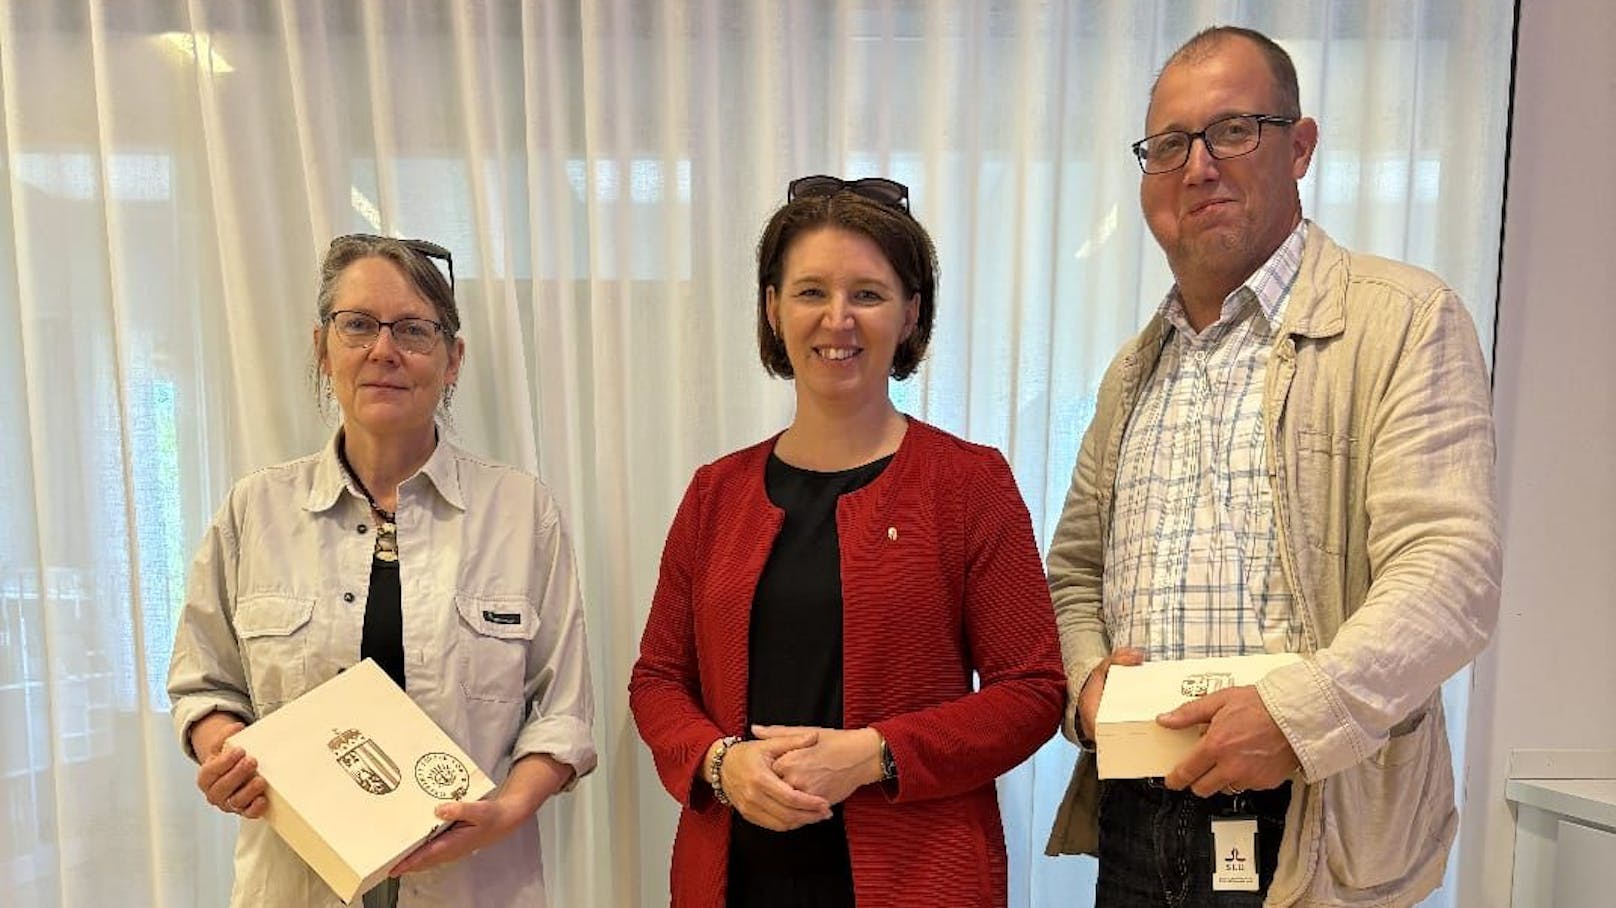 Hillevi Eriksson und Raymond Wide, Mitglieder der schwedischen Forstbehörde, hielten Vorträge über die nachhaltige Bewirtschaftung der Wälder.